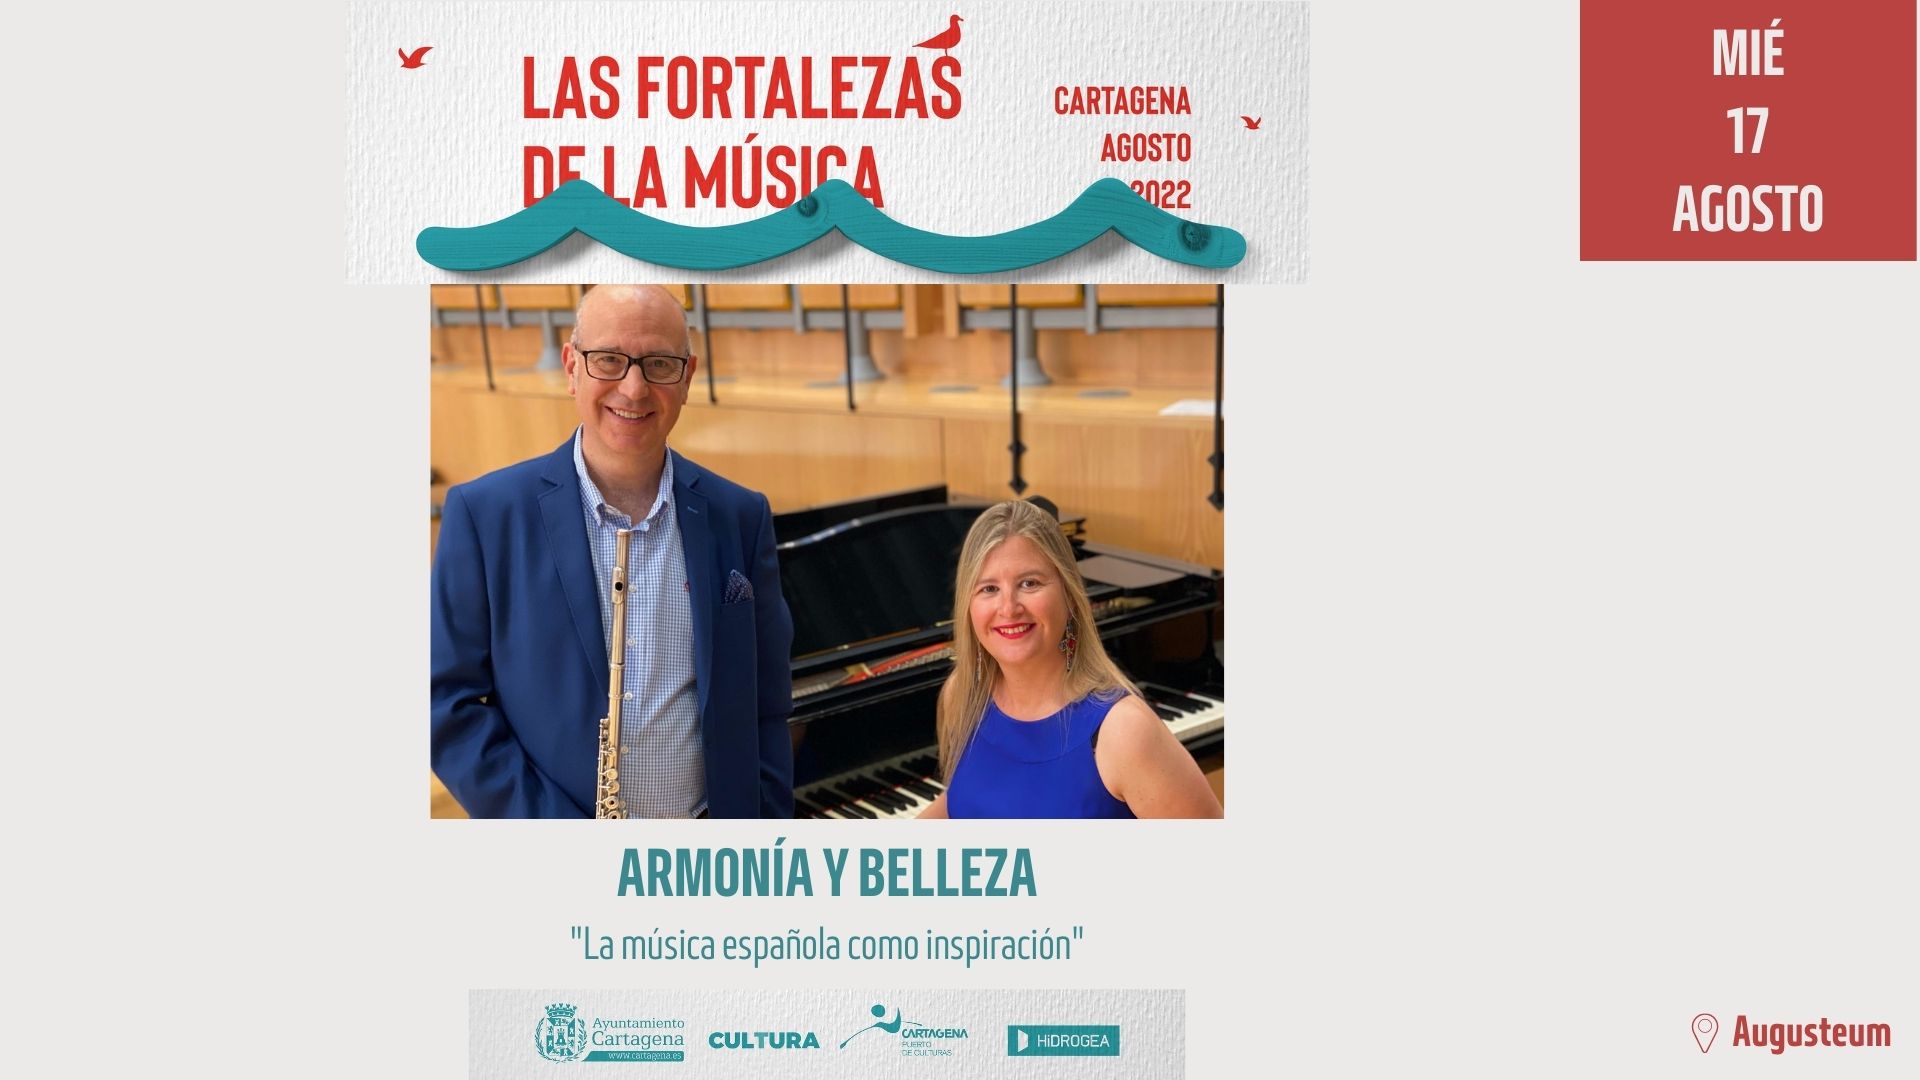 LAS FORTALEZAS DE LA MUSICA: AUGUSTEUM